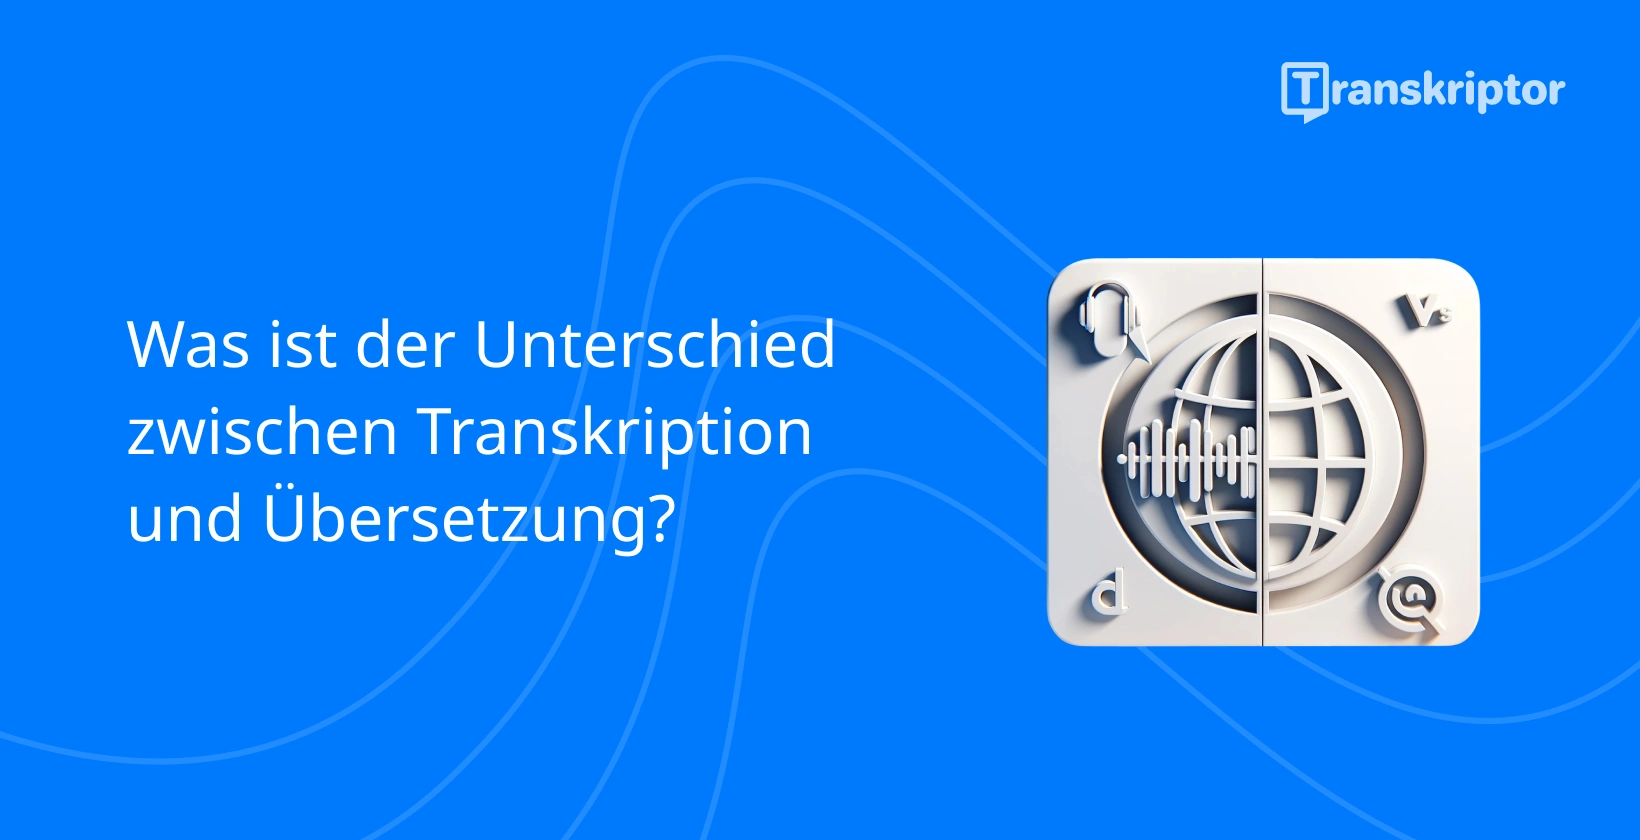 Der Unterschied zwischen Transkriptions- und Übersetzungsdiensten mit Mikrofon- und Globussymbolen.